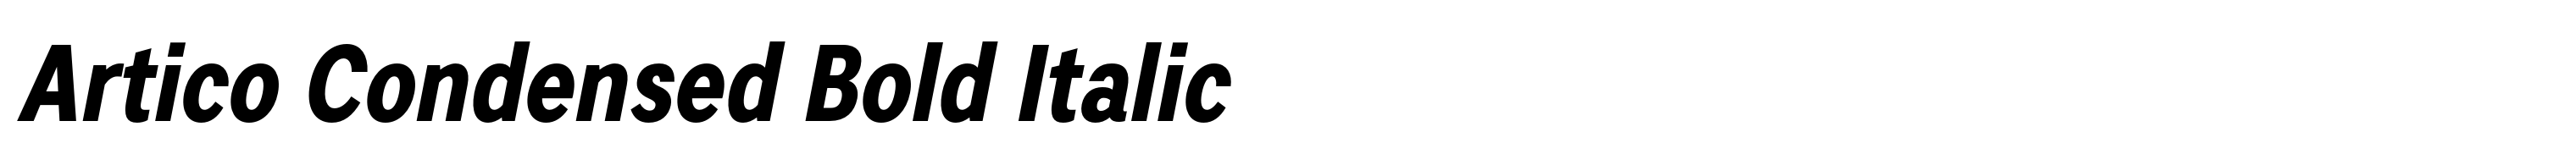 Artico Condensed Bold Italic